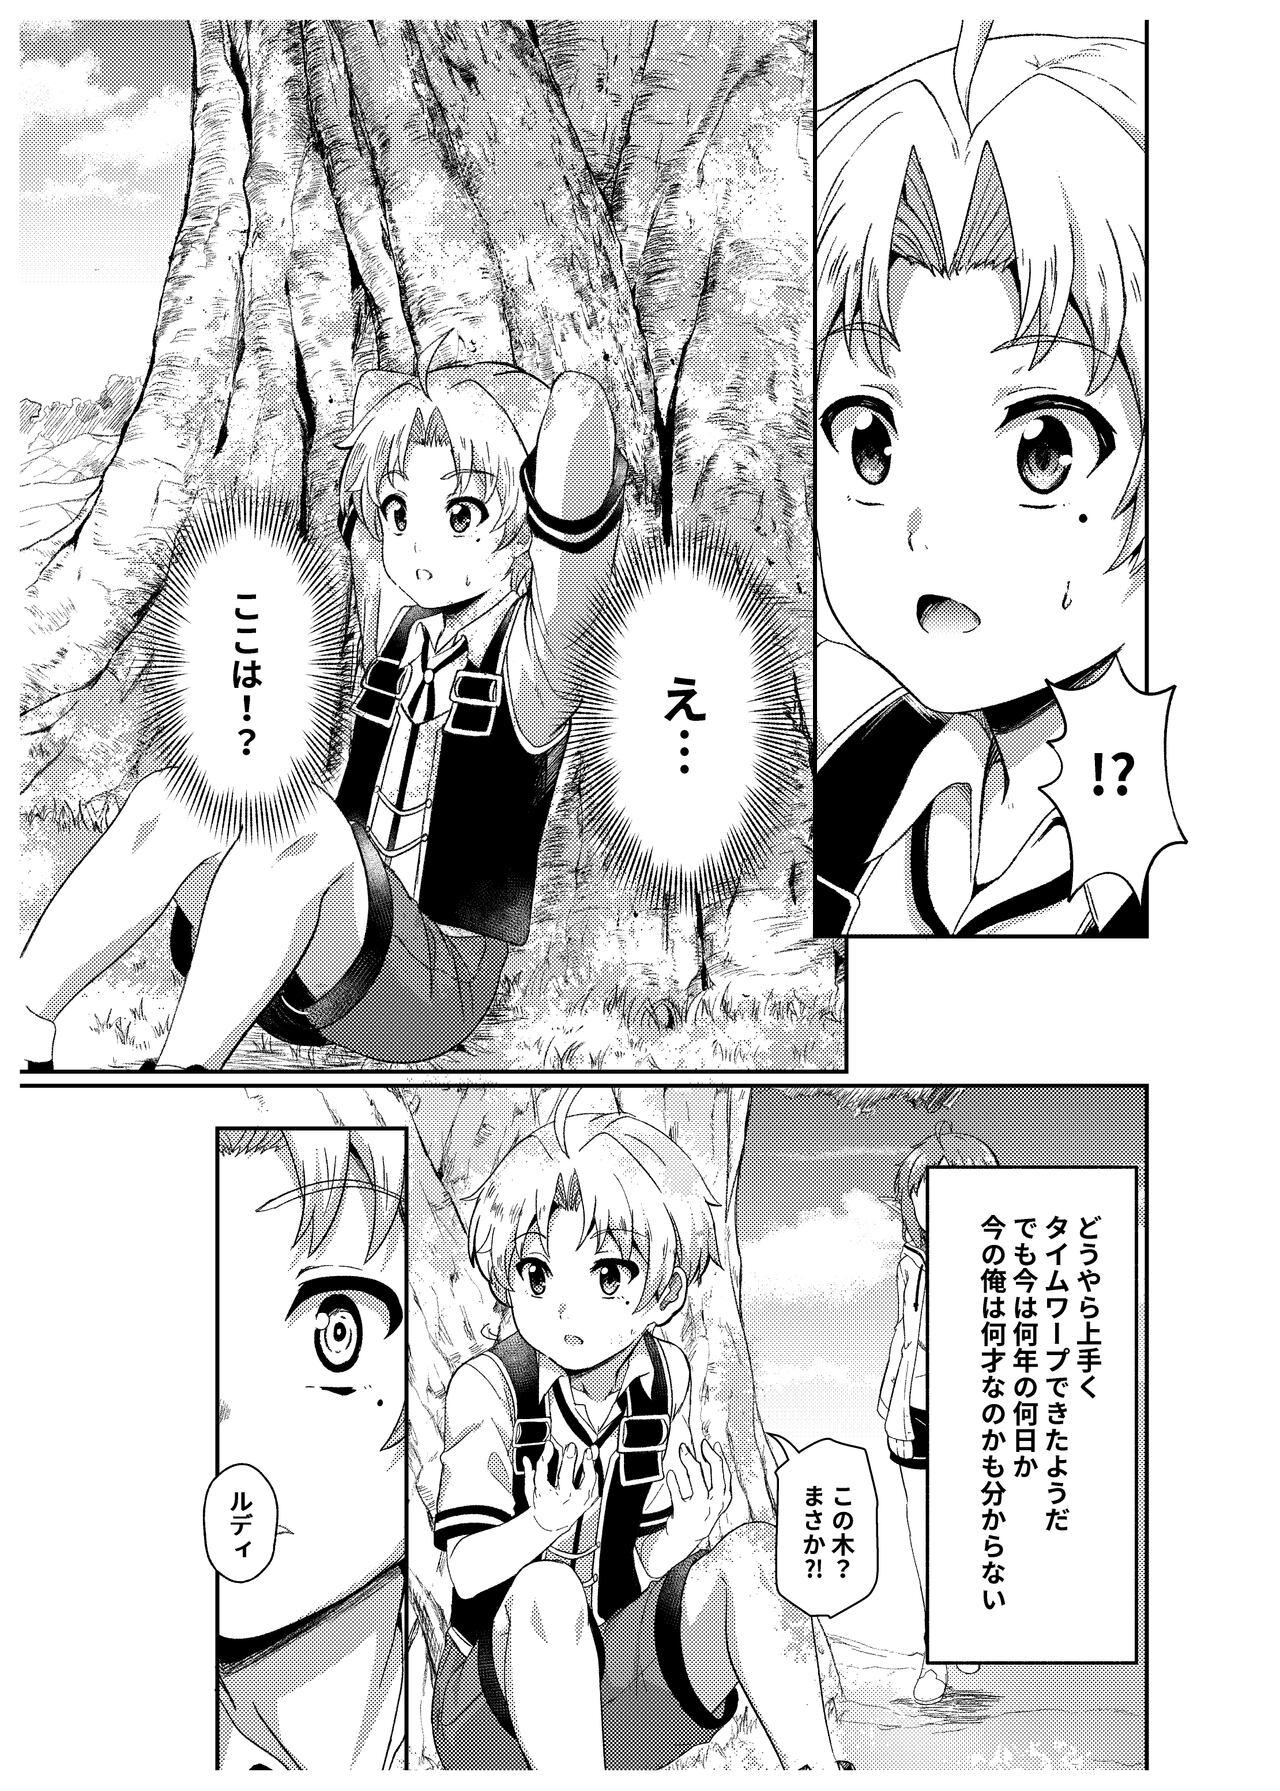 Chupando シルフィのタイムラインになったら - Mushoku tensei Coroa - Page 7